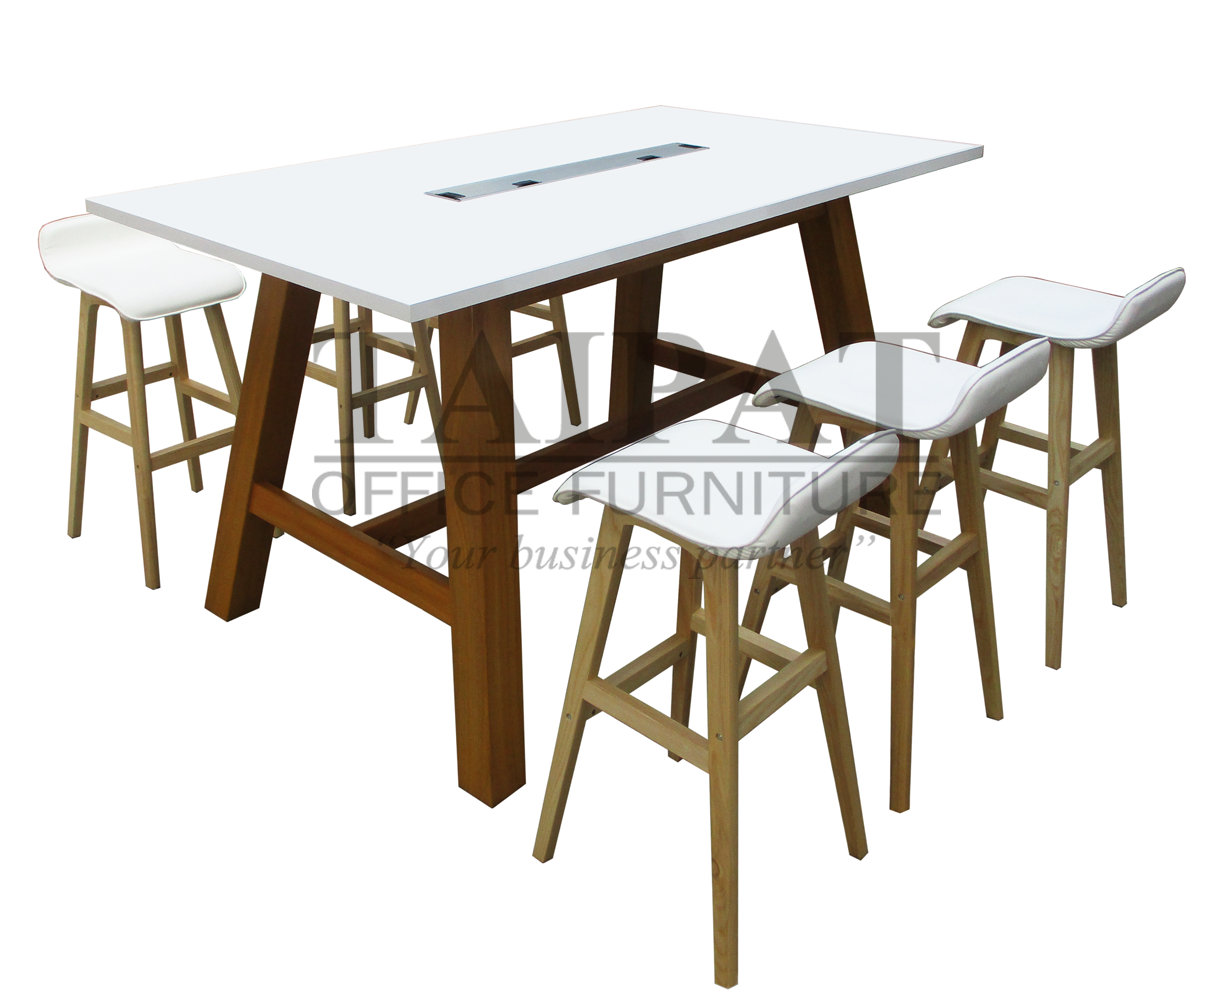 โต๊ะประชุม CF-0042 : ขนาด 180 x 100 x 100 ซม. (4-6 ที่นั่ง)